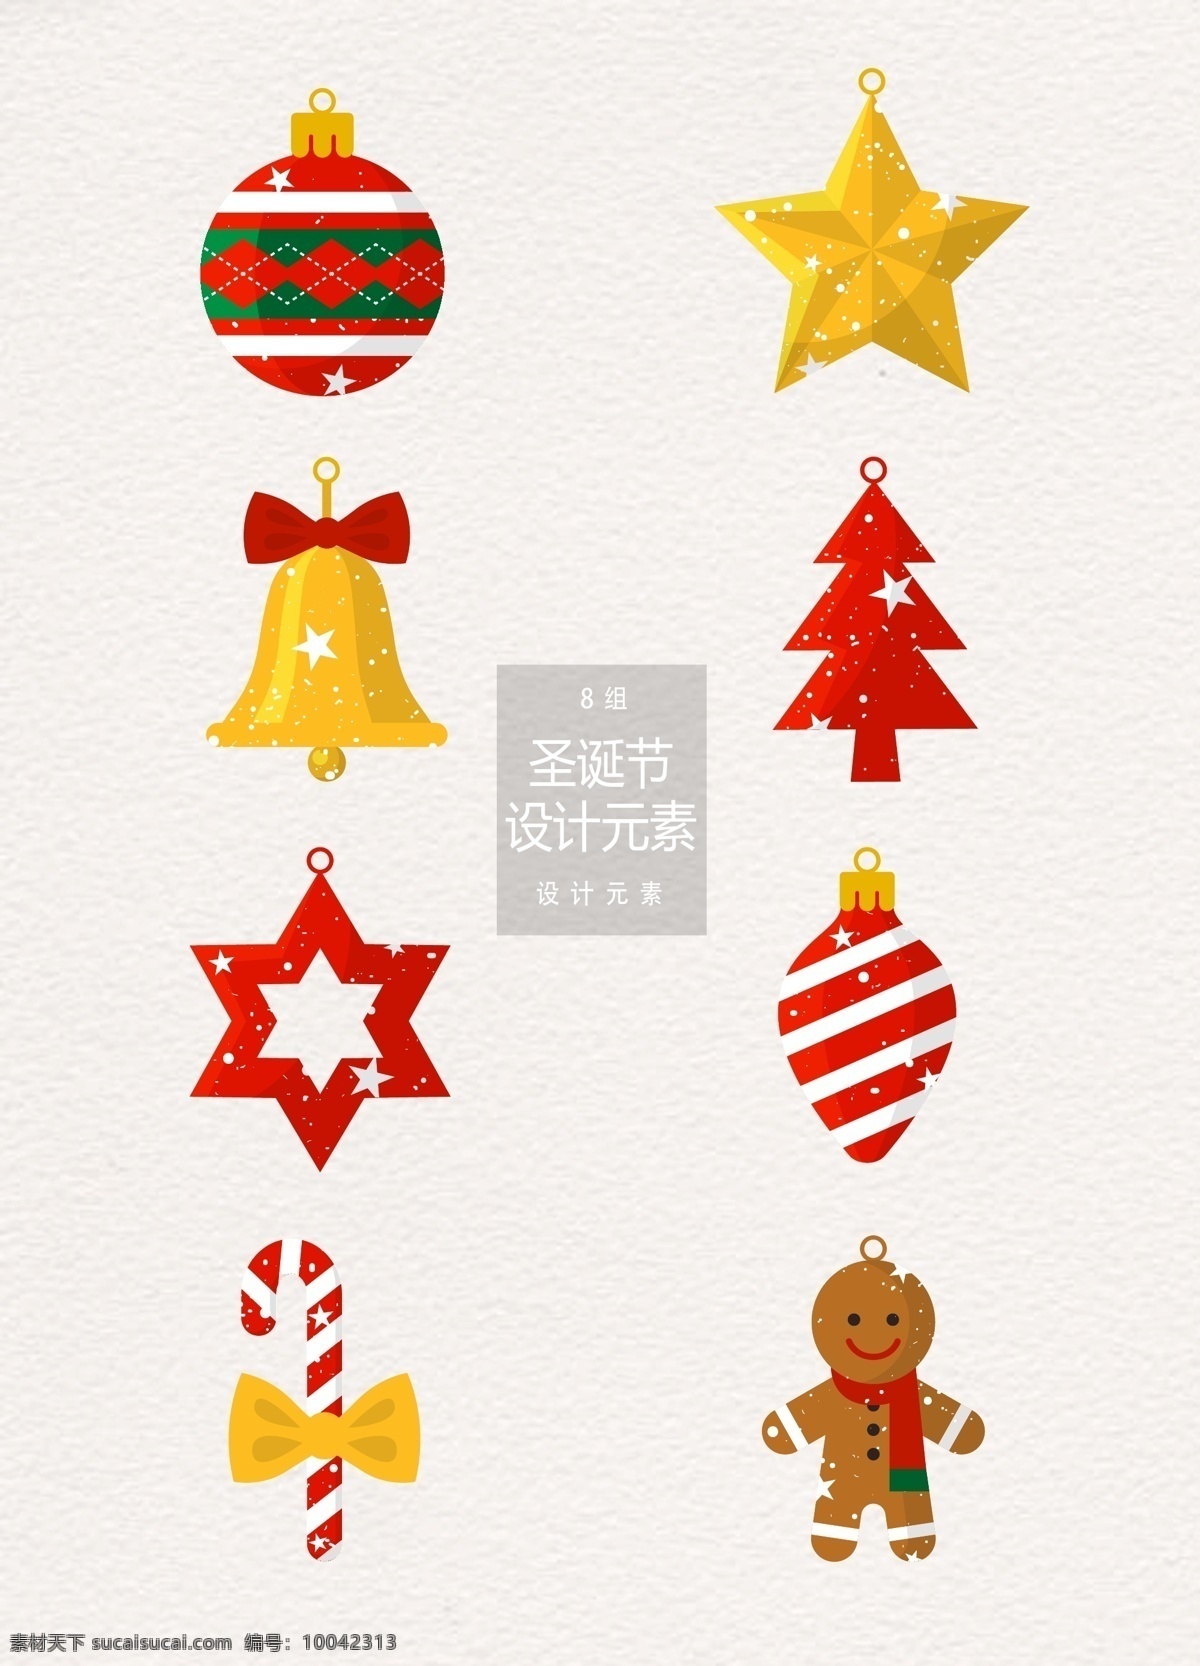 创意 圣诞节 装饰设计 元素 设计元素 五角星 圣诞树 铃铛 圣诞节装饰 圣诞 圣诞球 姜饼人